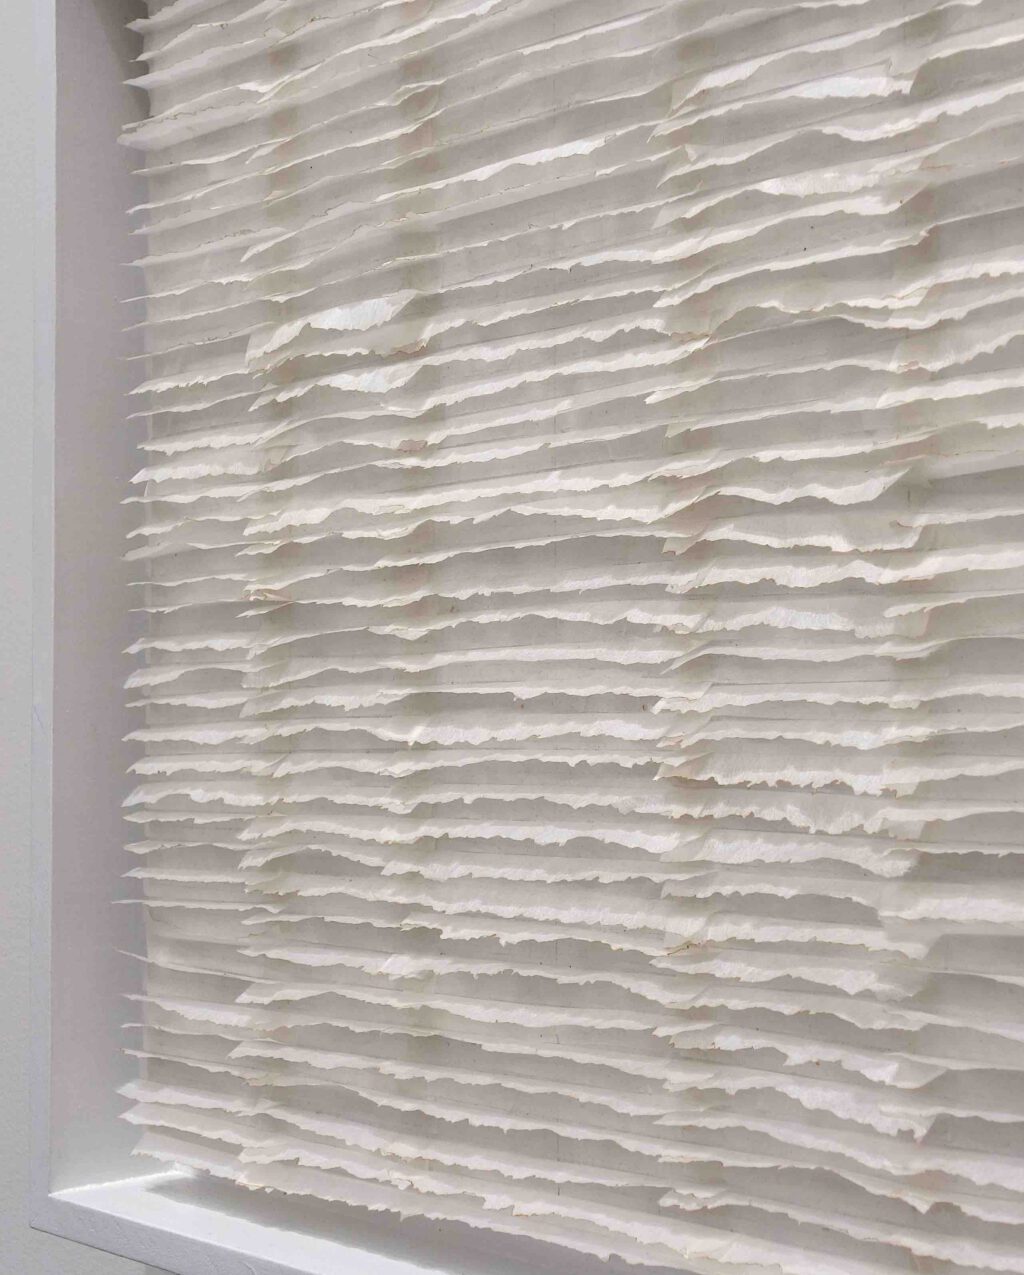 内藤楽子 NAITO Rakuko RN1317 1-2-2 1-2-21 2021, Japanese paper on board (burnt edge stripes) , 44.5 x 44.5 x 6.3 cm, detail @ The Mayor Gallery, Art Basel 2023